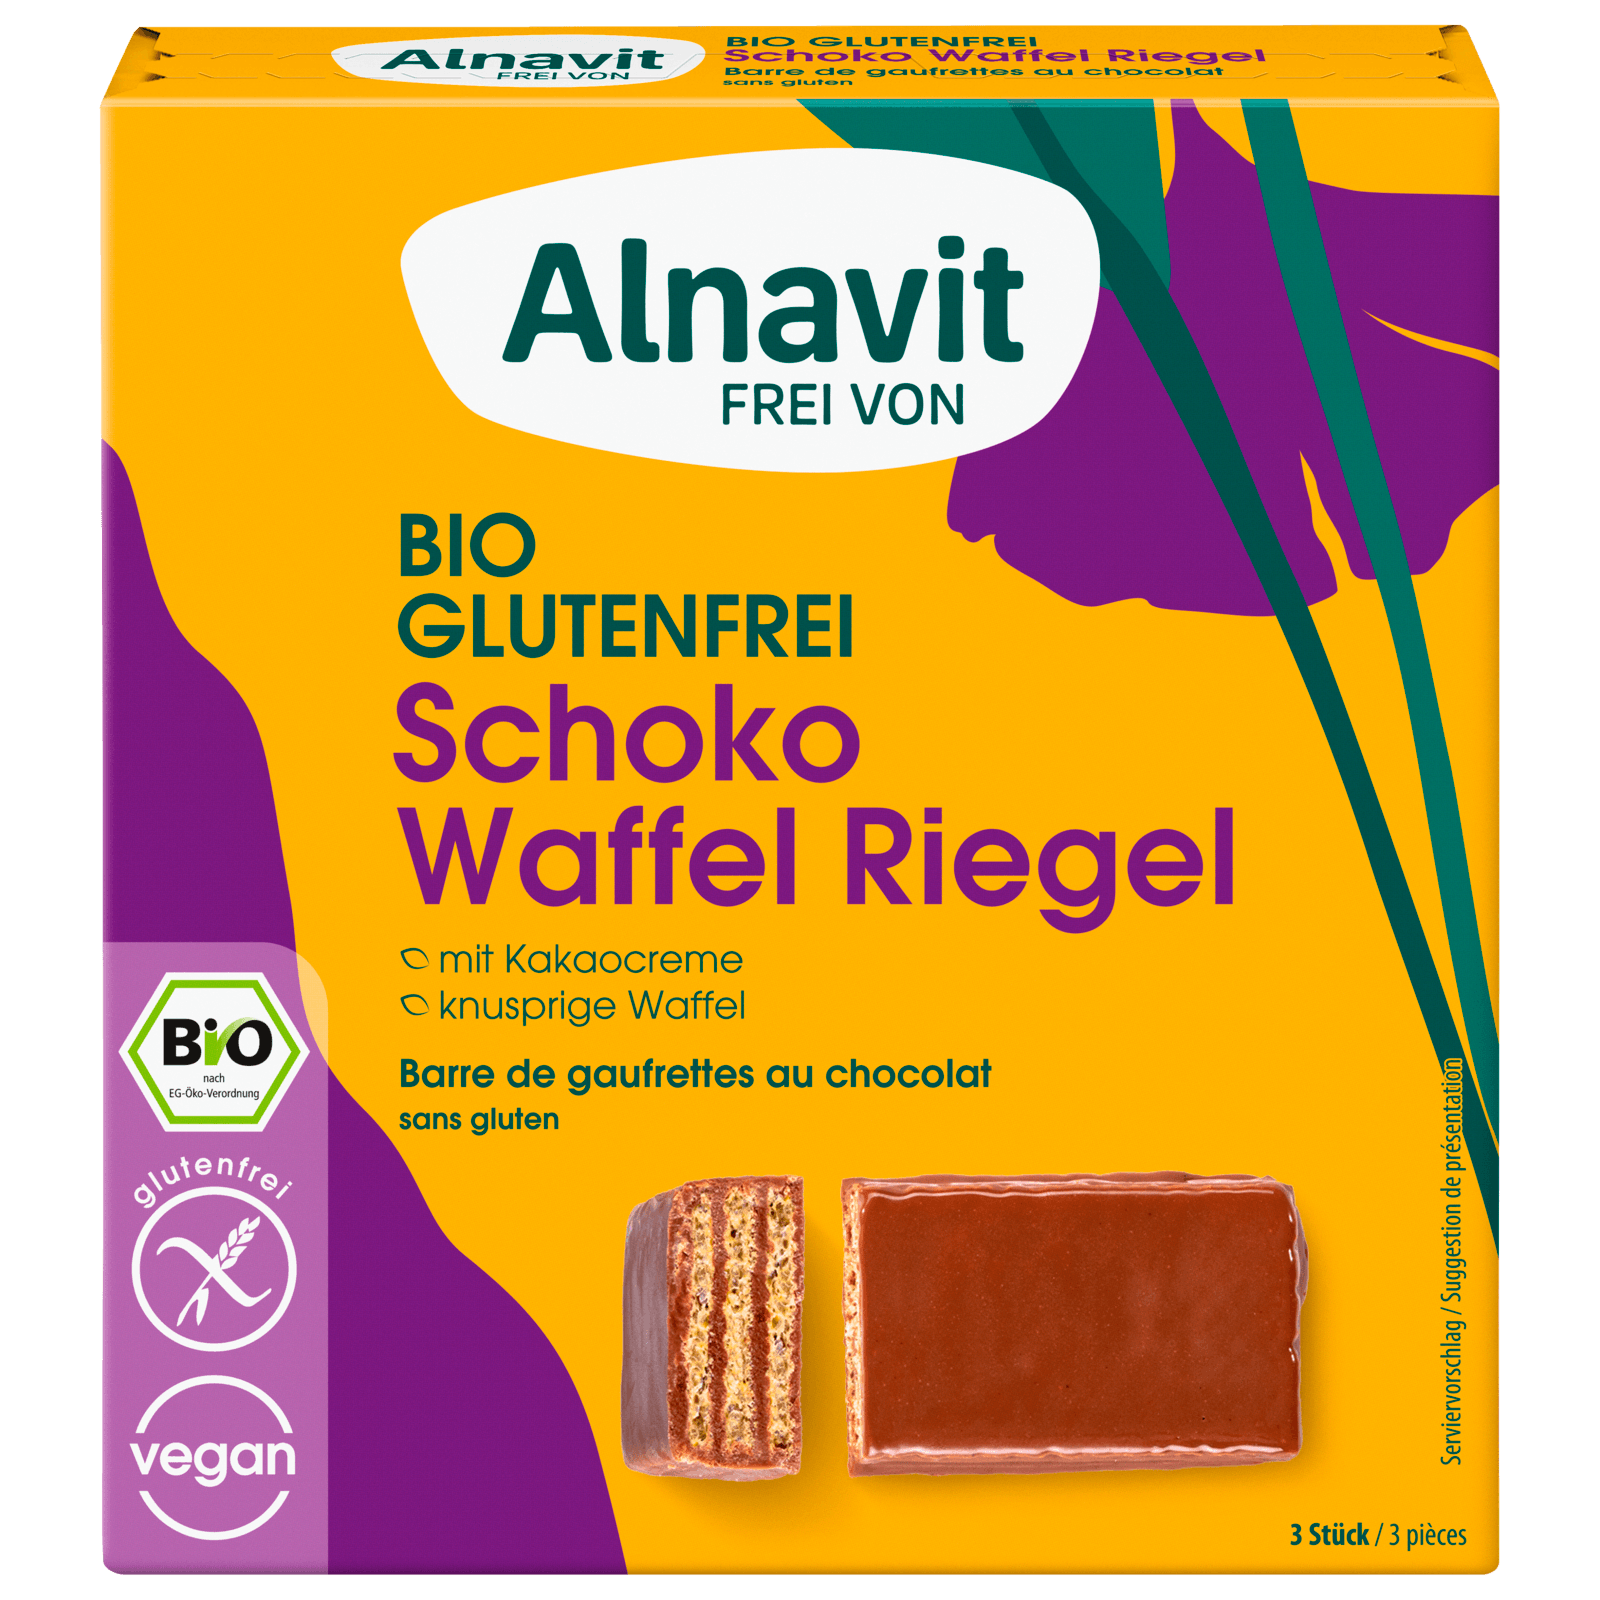 Alnavit Bio Schoko Waffelriegel glutenfrei 75g